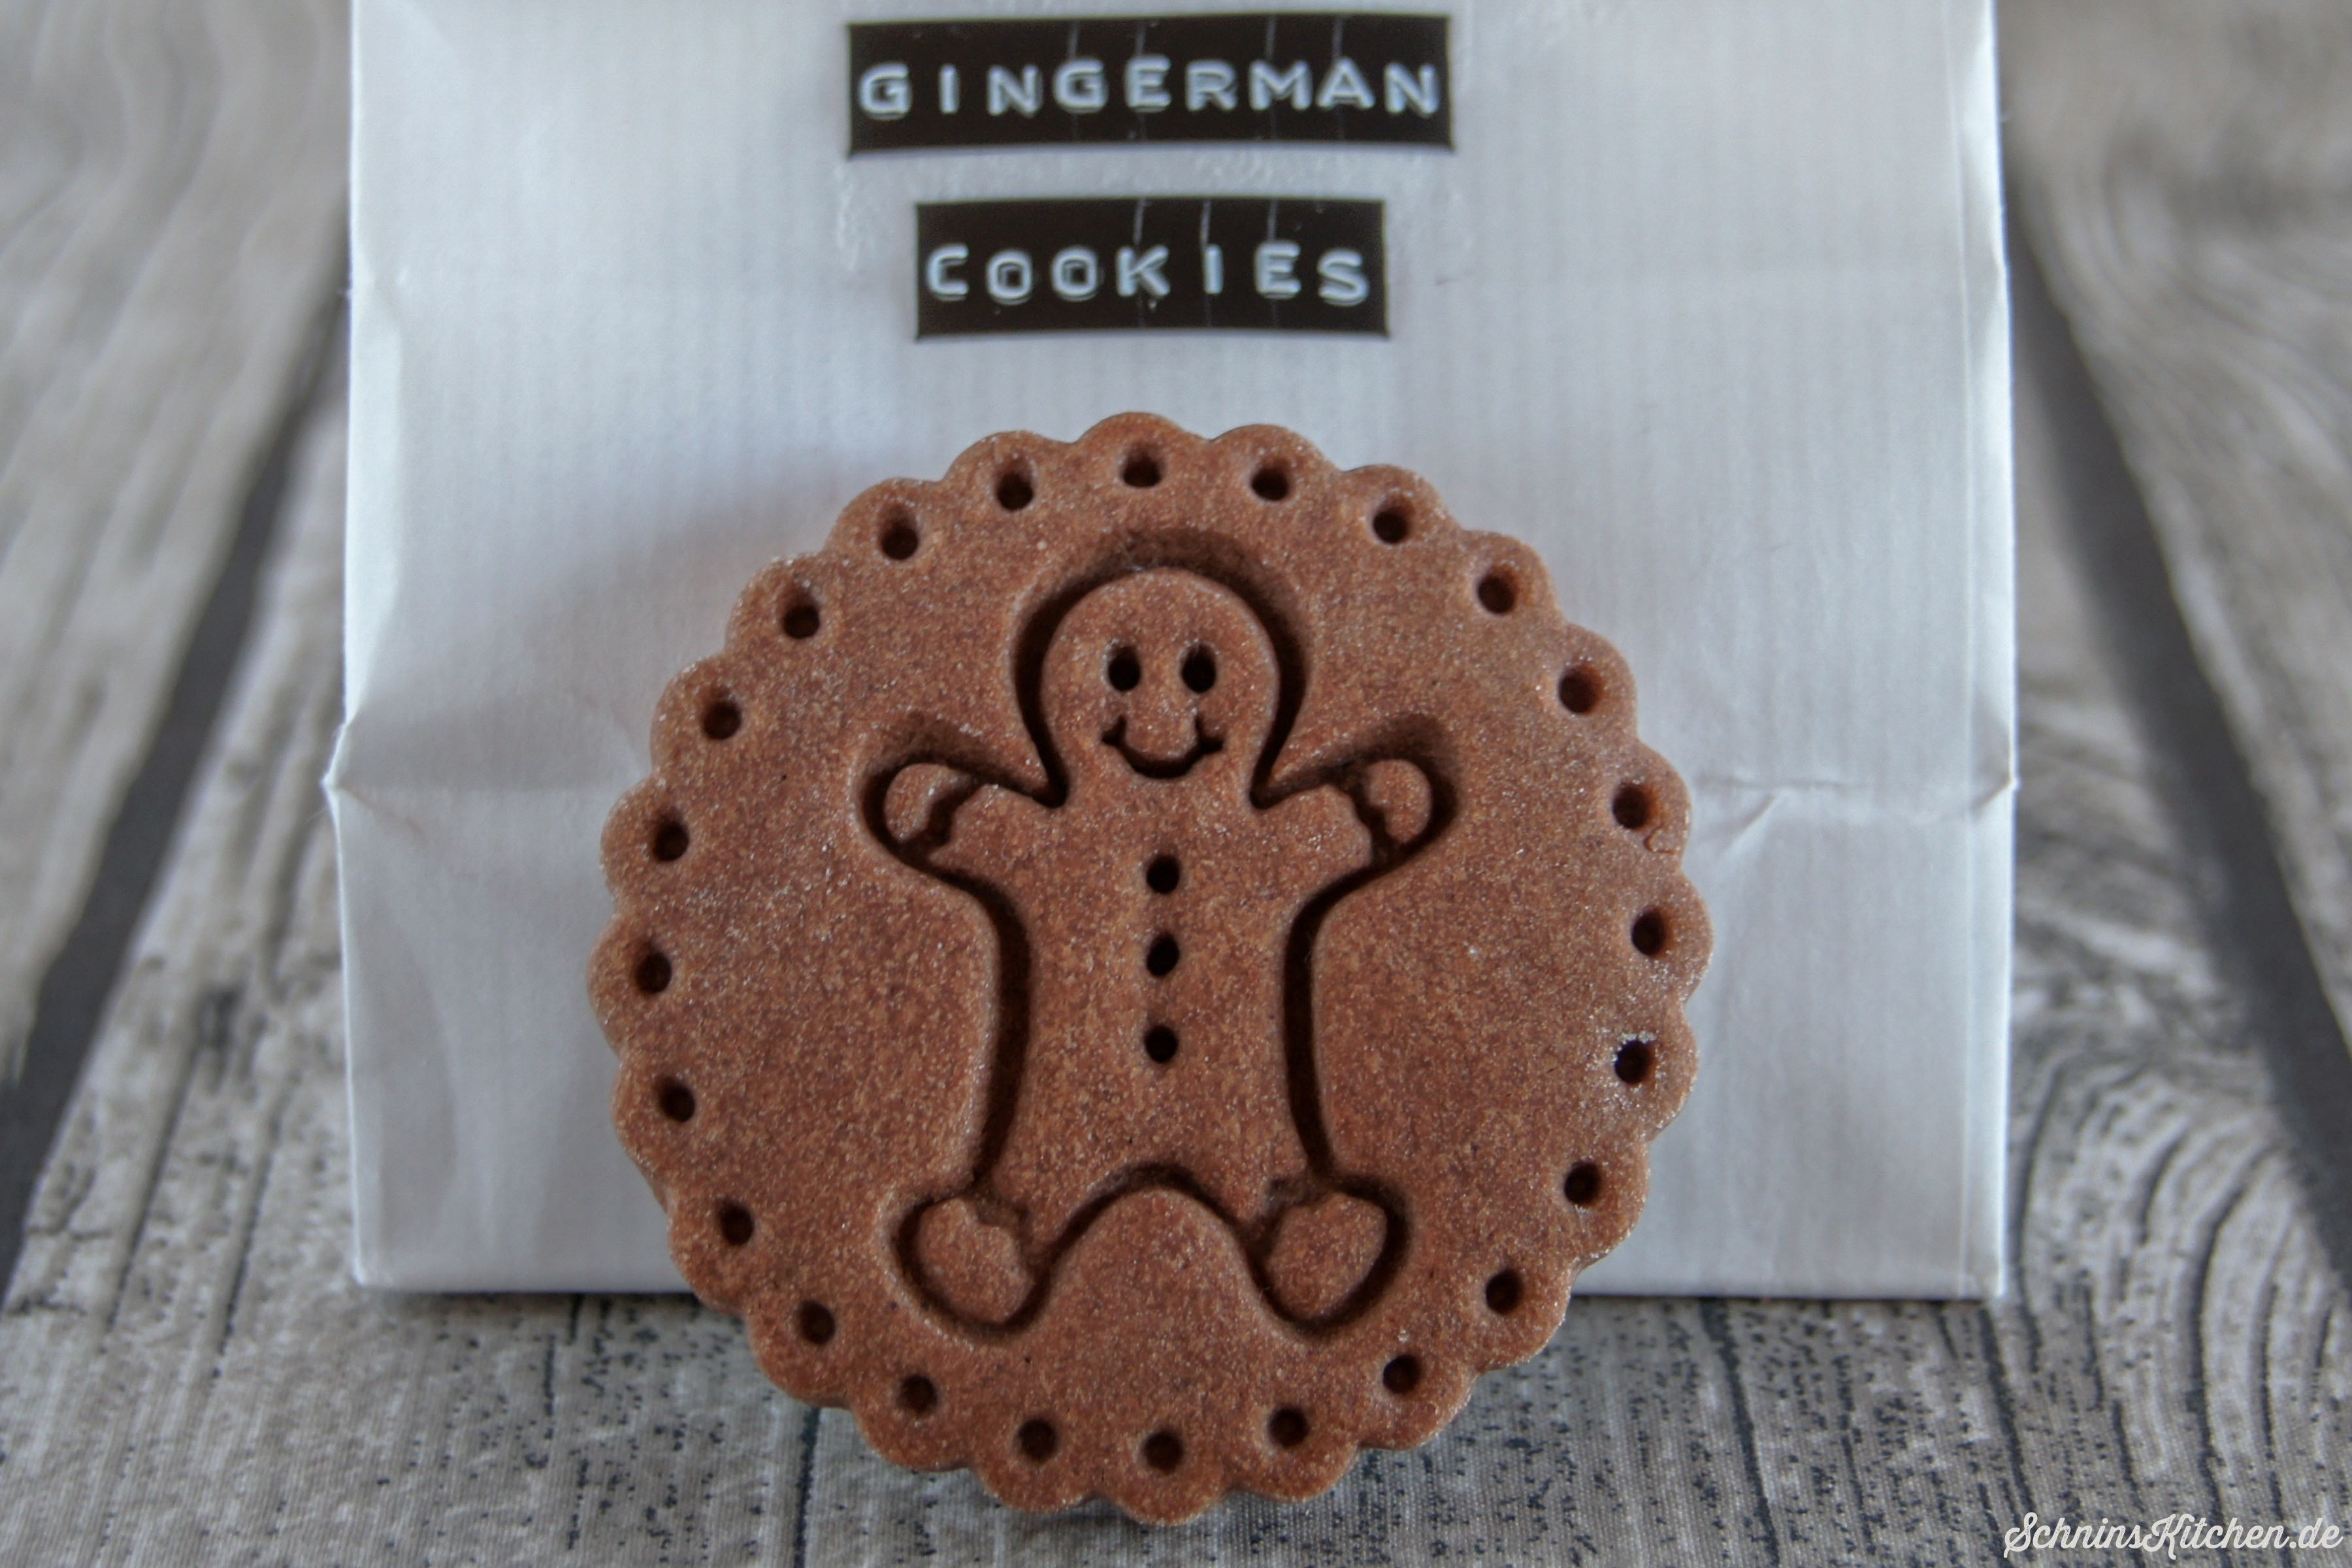 Lebkuchen-Cookies mit Keksstempel Mr. Gingerman - leckere Weihnachtsplätzchen | www.schninskitchen.de